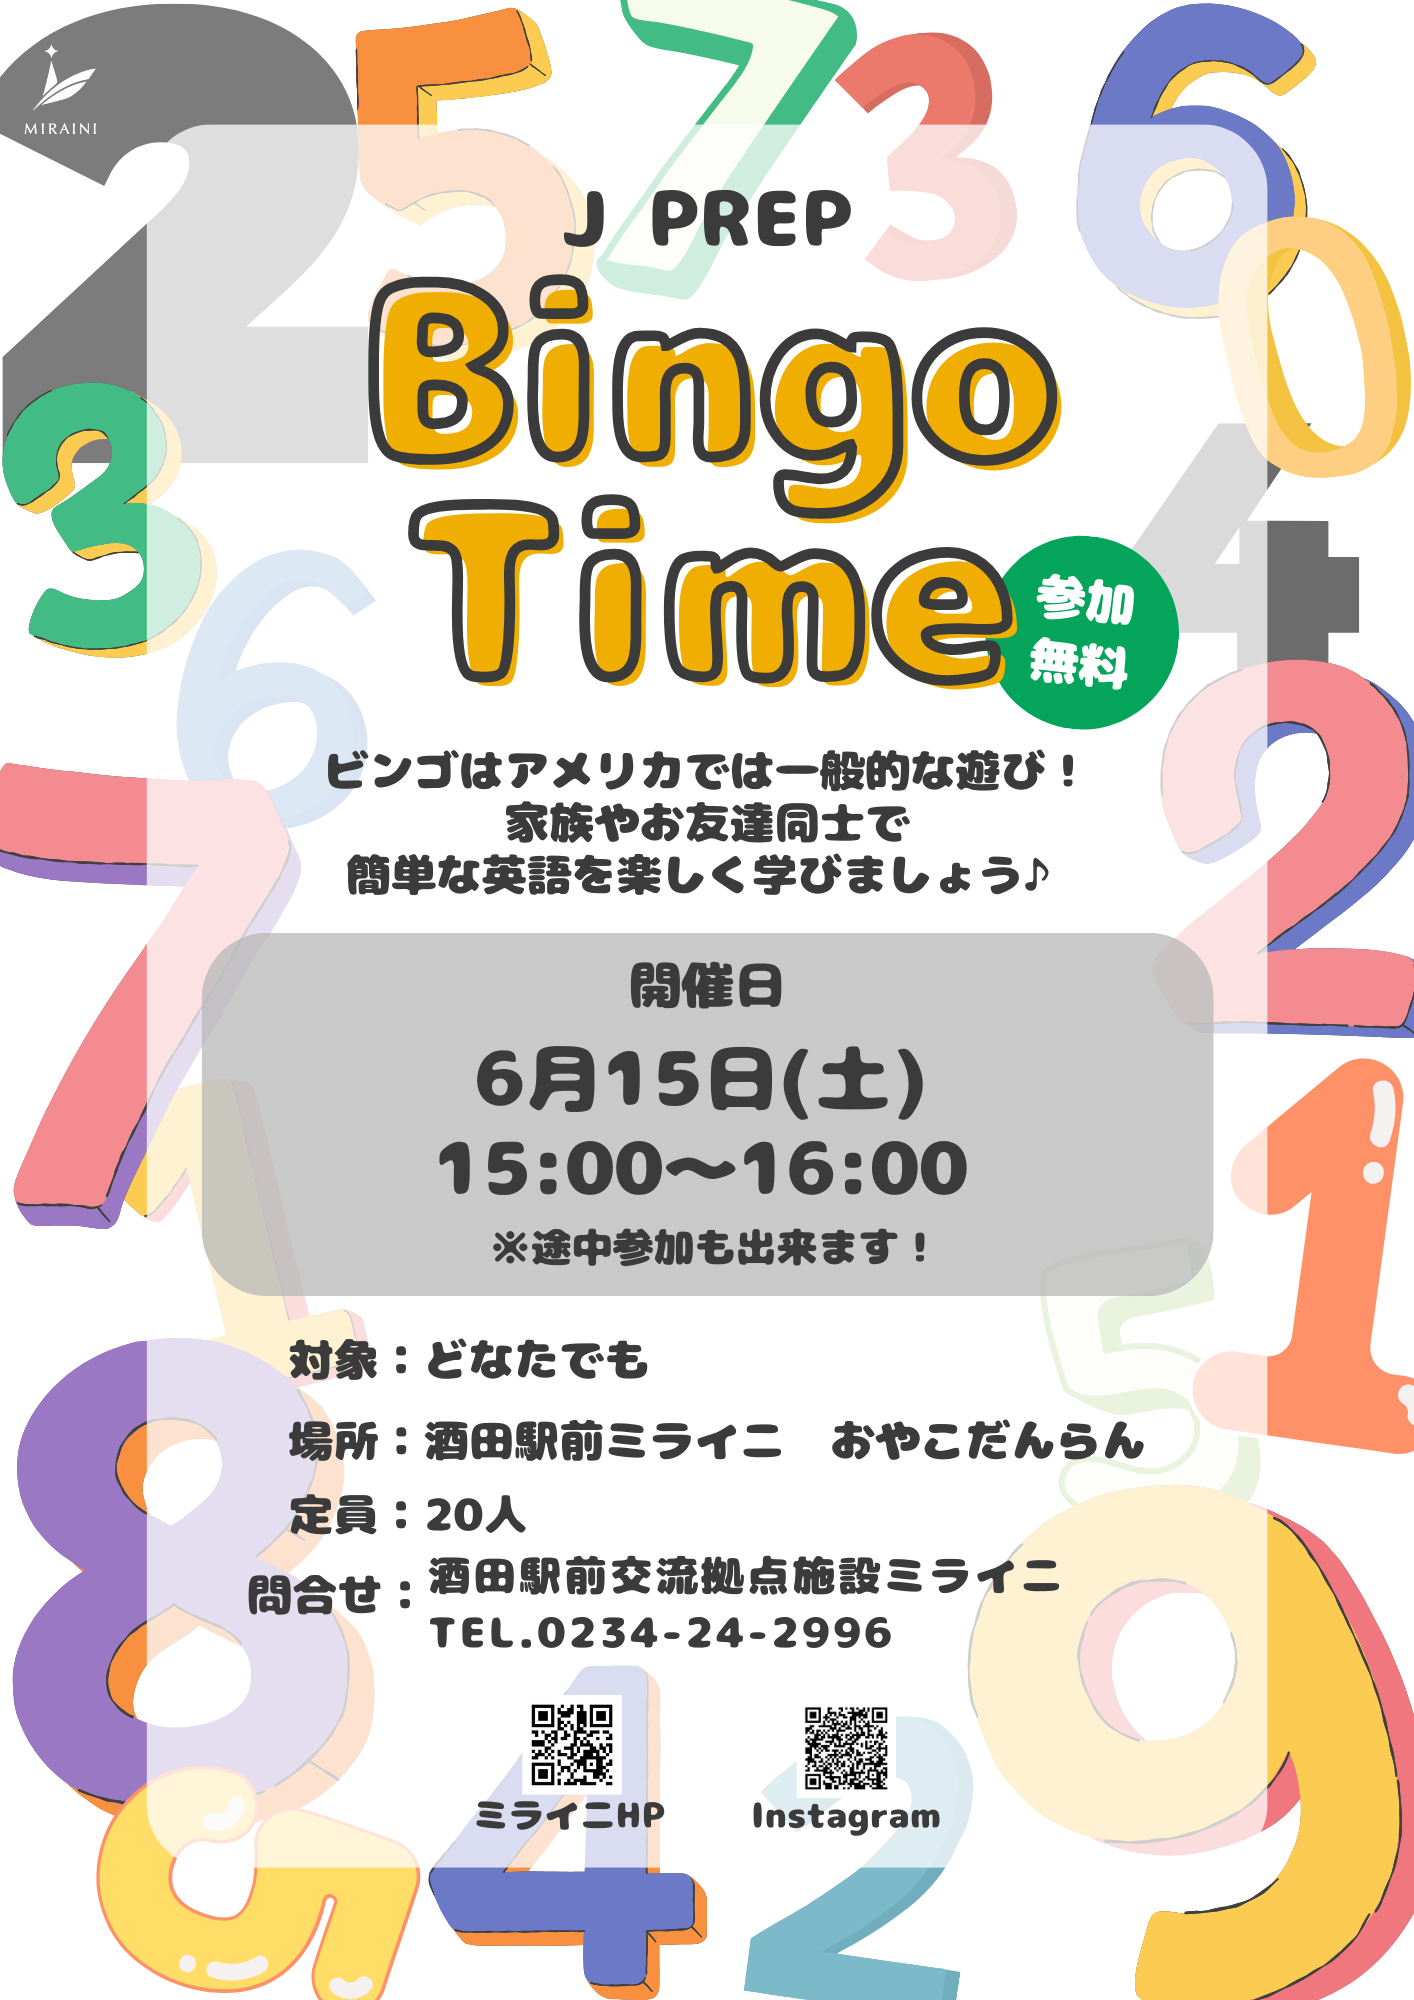 【庄内イベント情報6/15】J PREP Bingo Time(英語のイベント)が開催